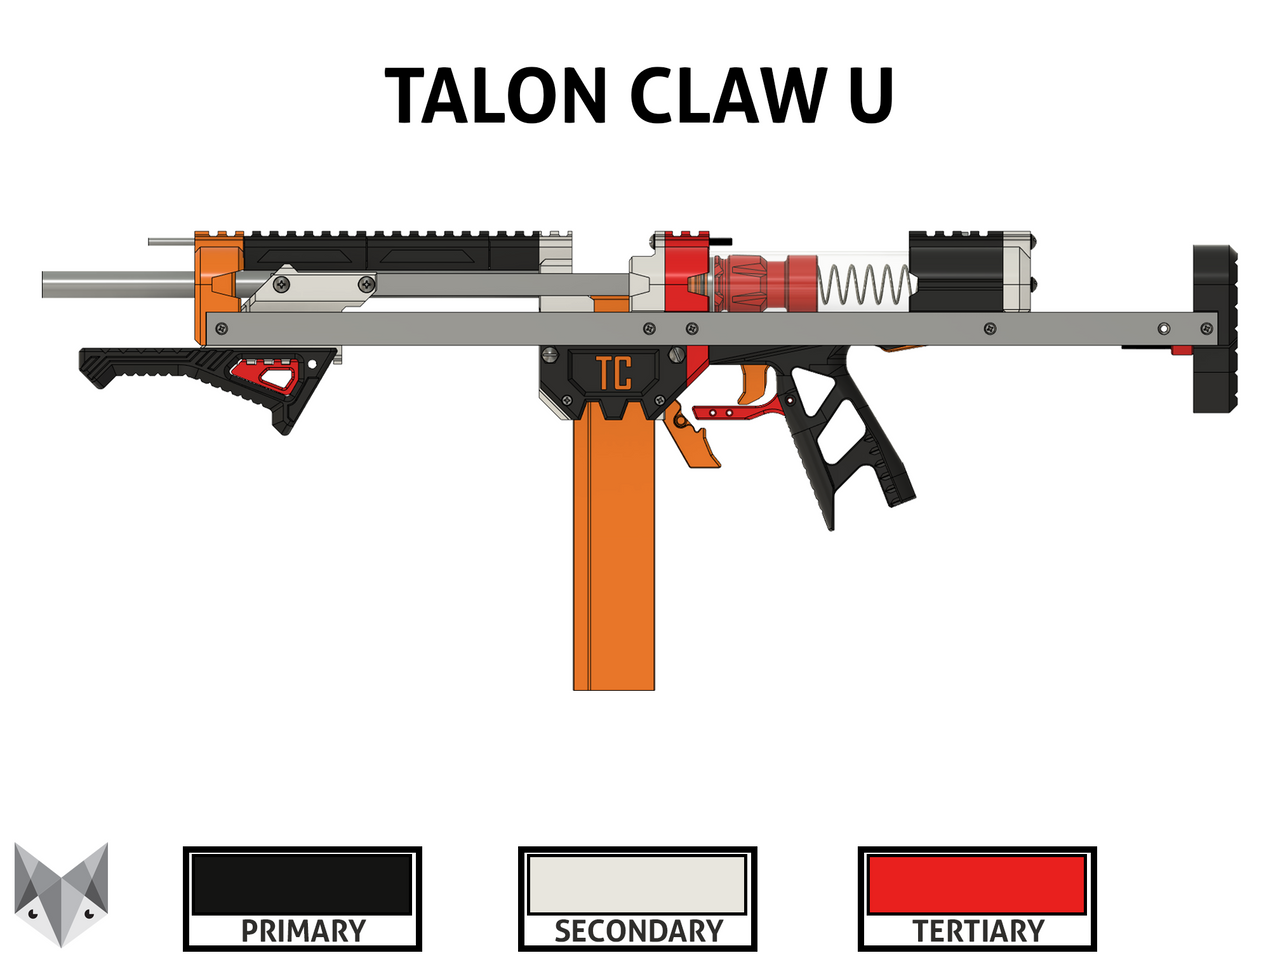 Talon Claw U